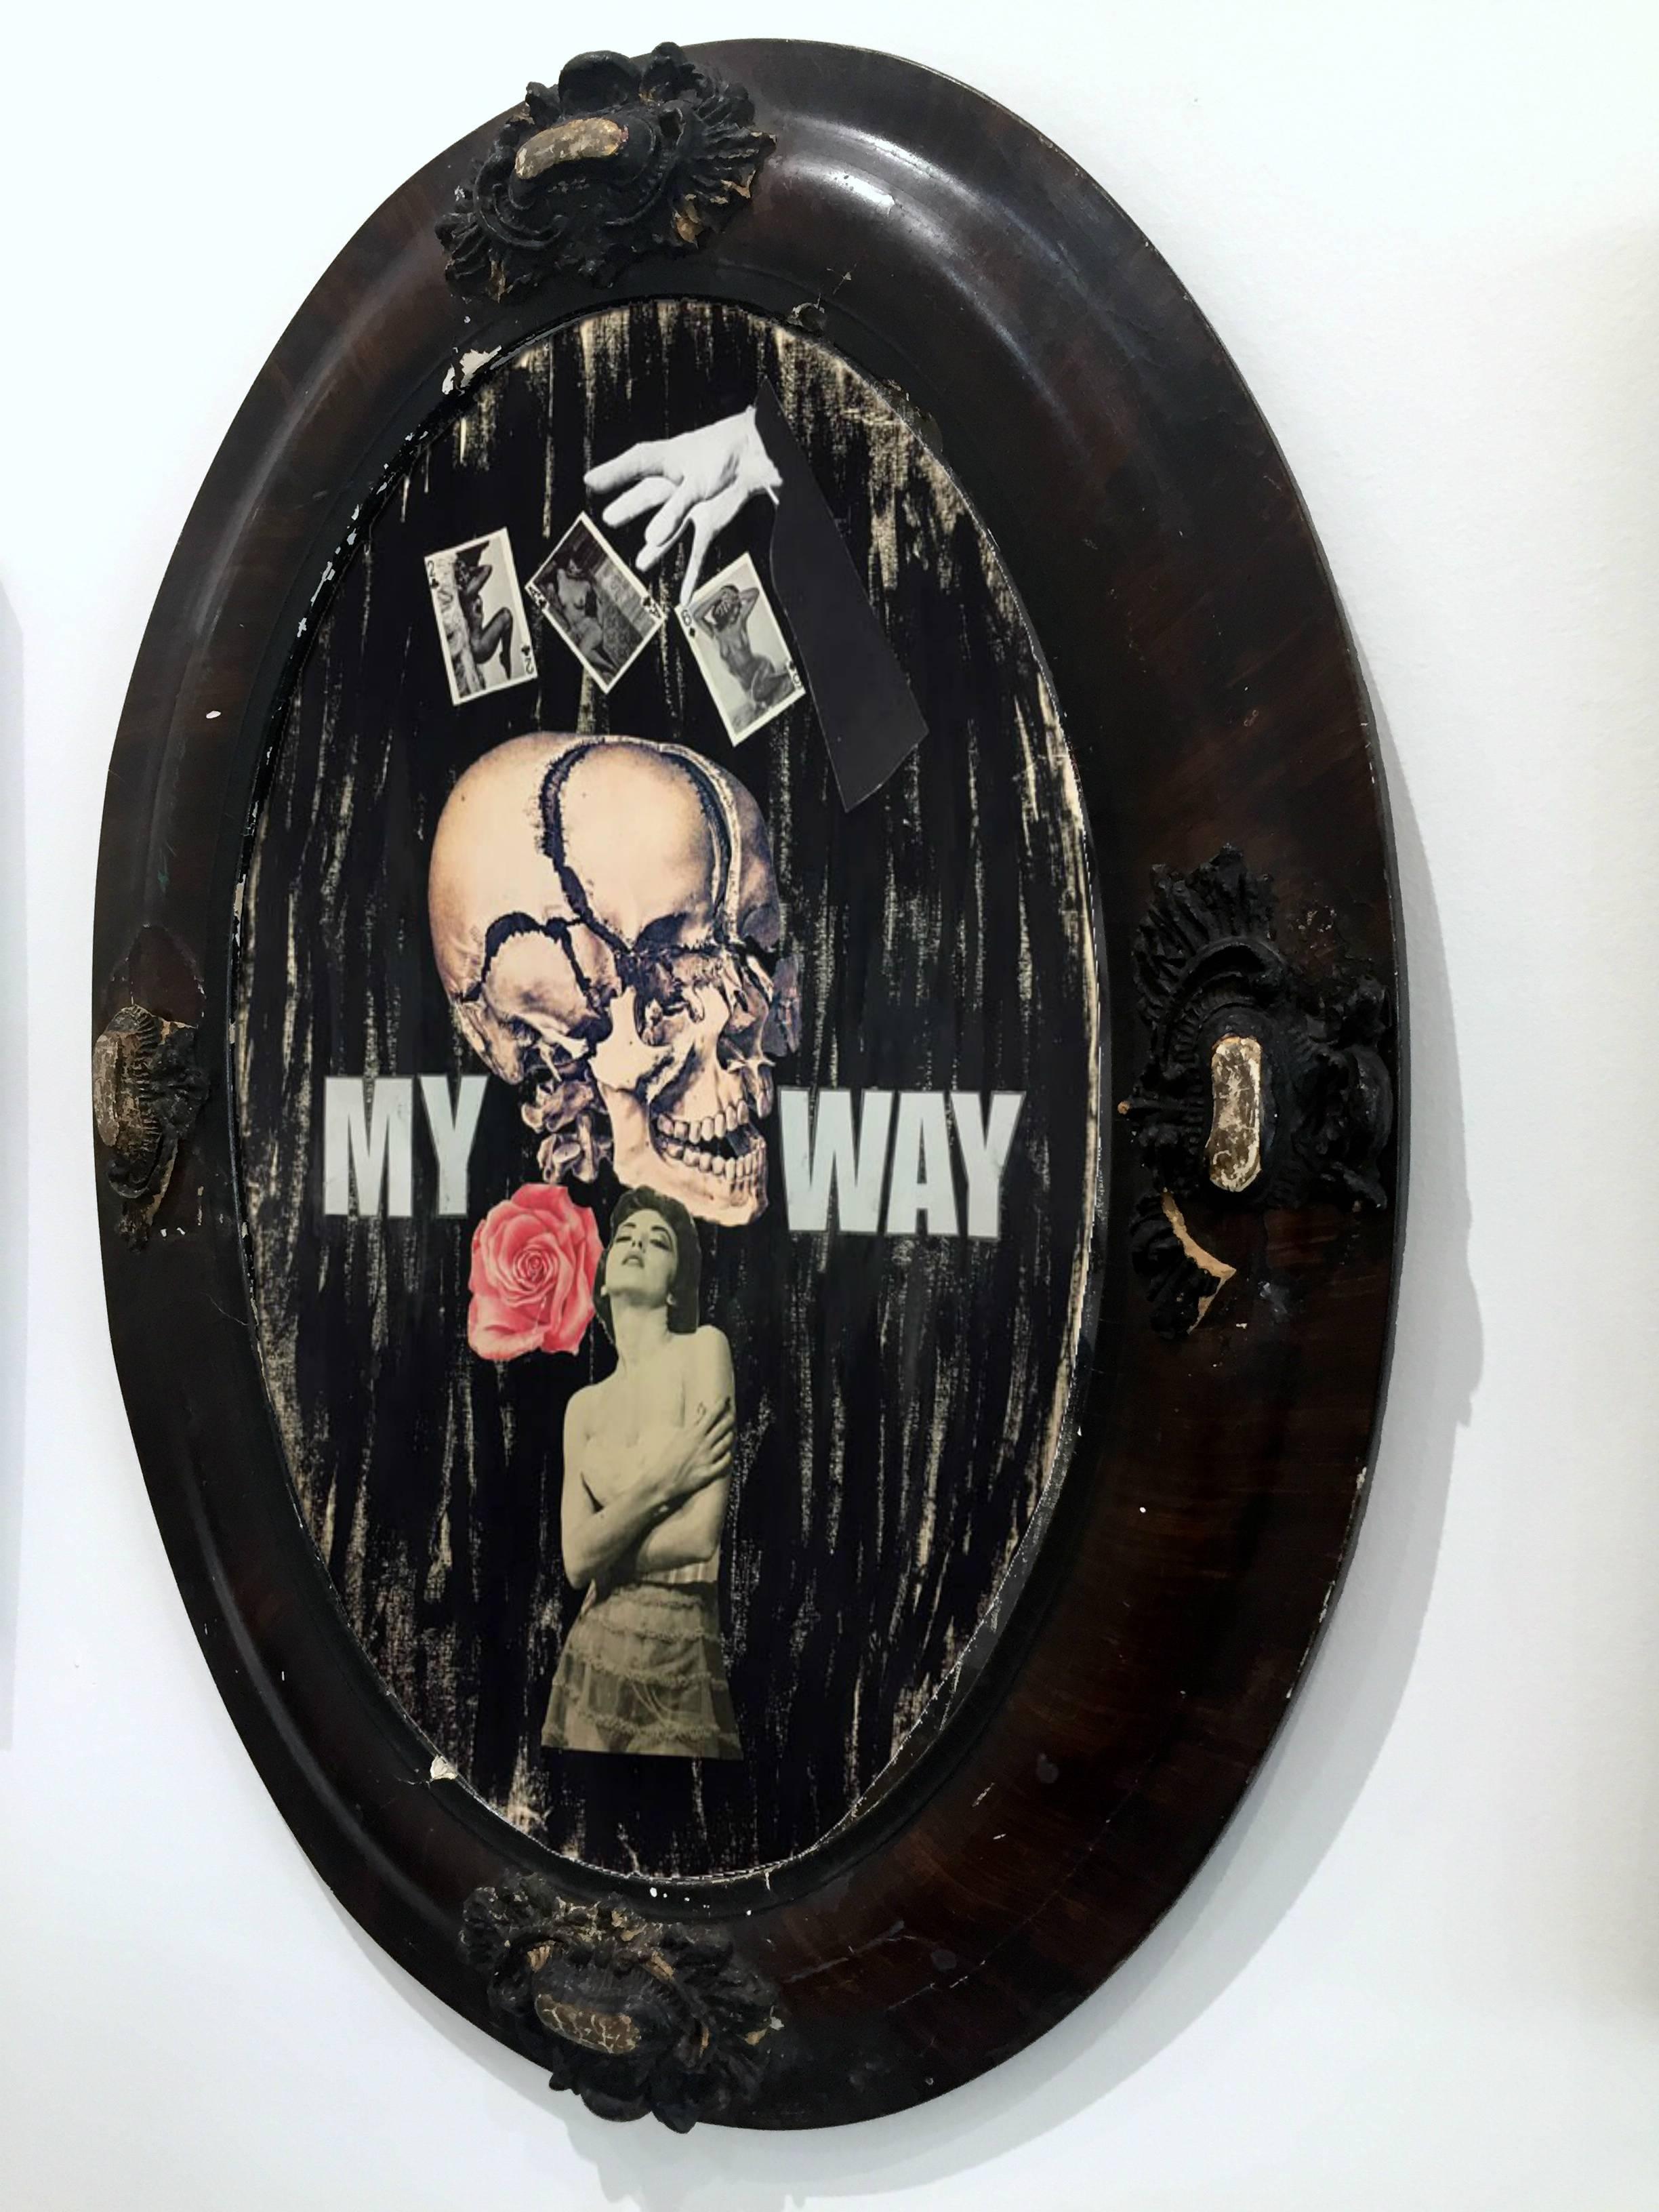 My Way - Contemporary Mixed Media Art by Chuck Bones